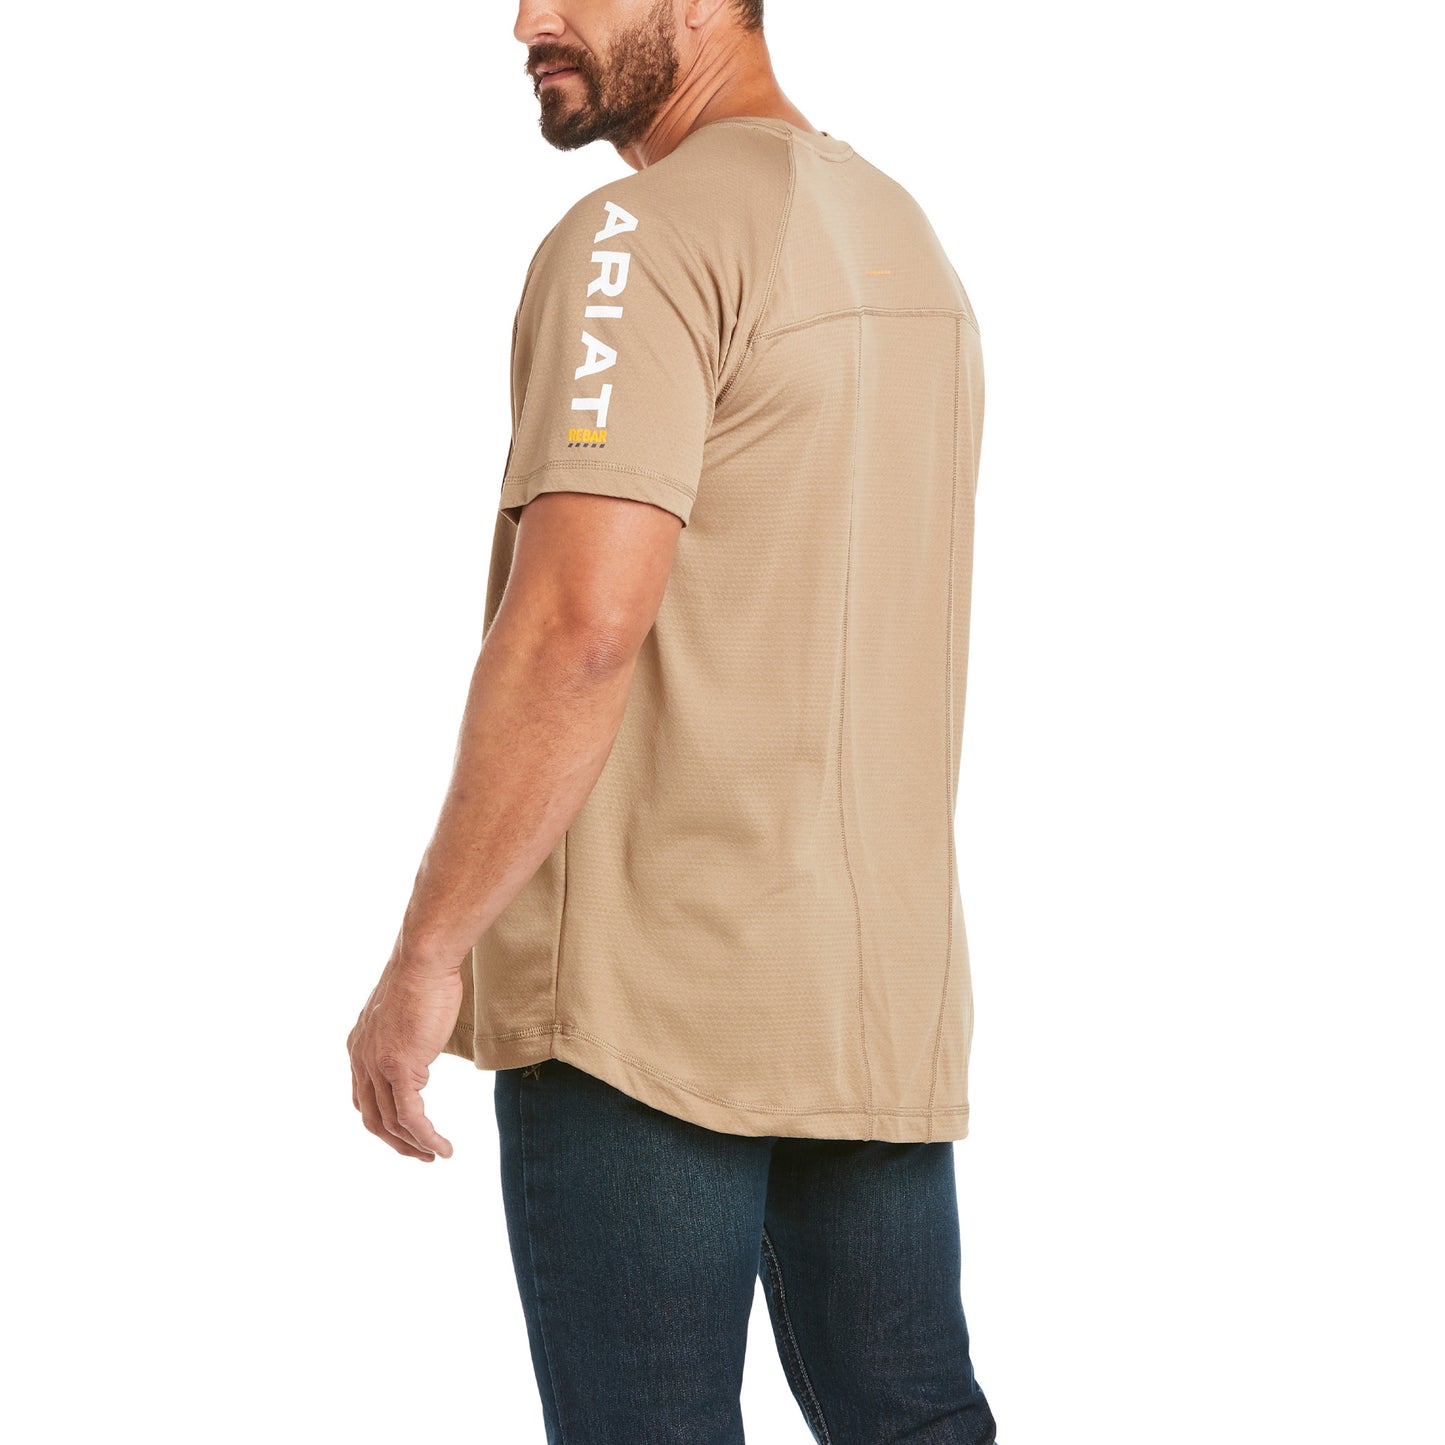 Ariat® Men's Rebar Heat Fighter SS Khaki T-Shirt 10031036